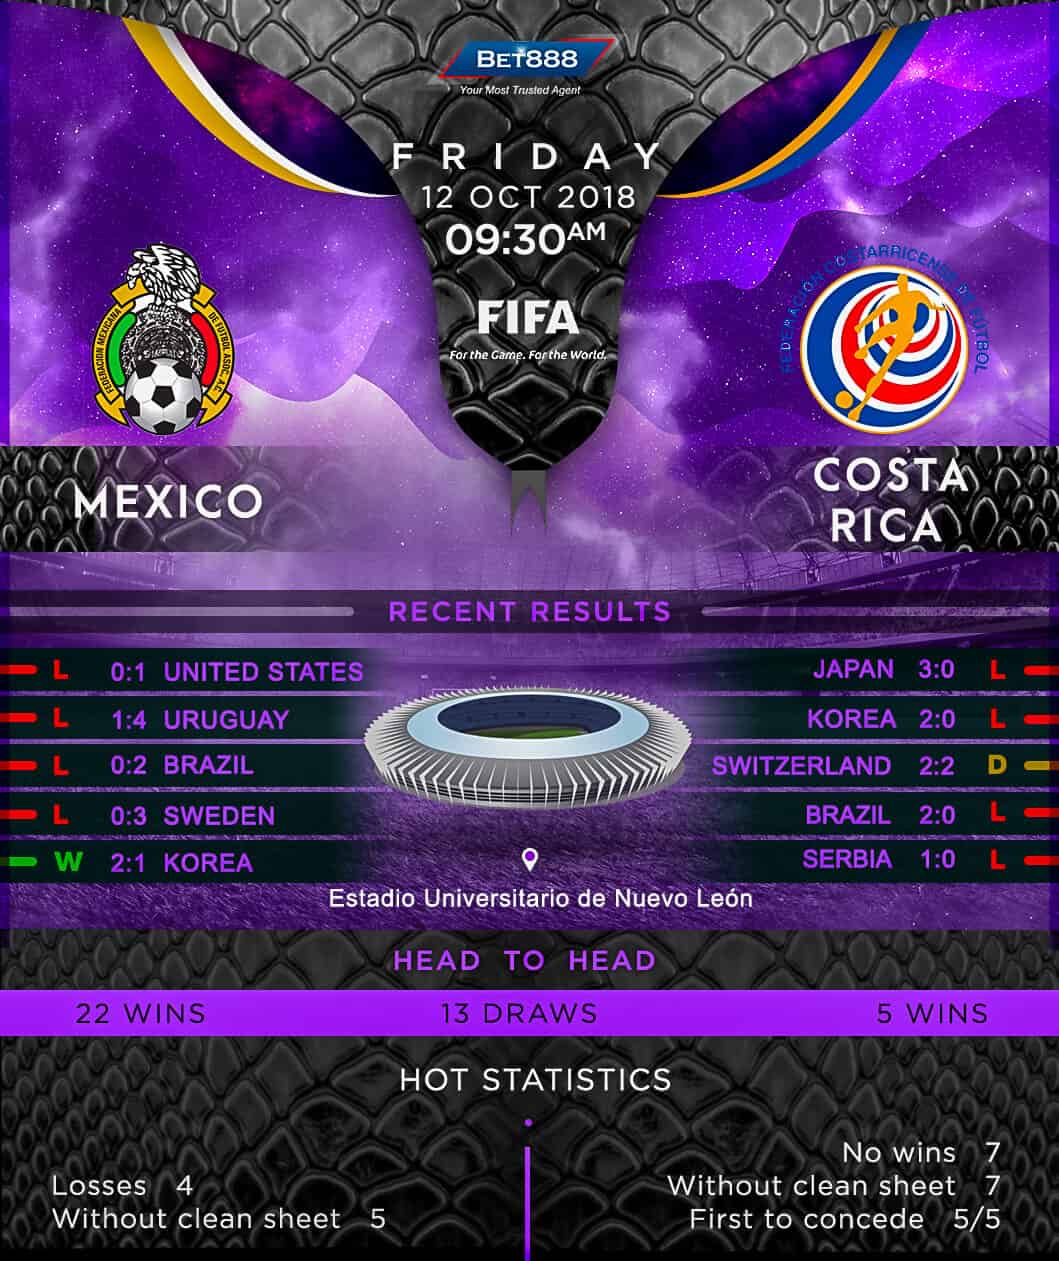 Mexico vs Costa Rica 12/10/18